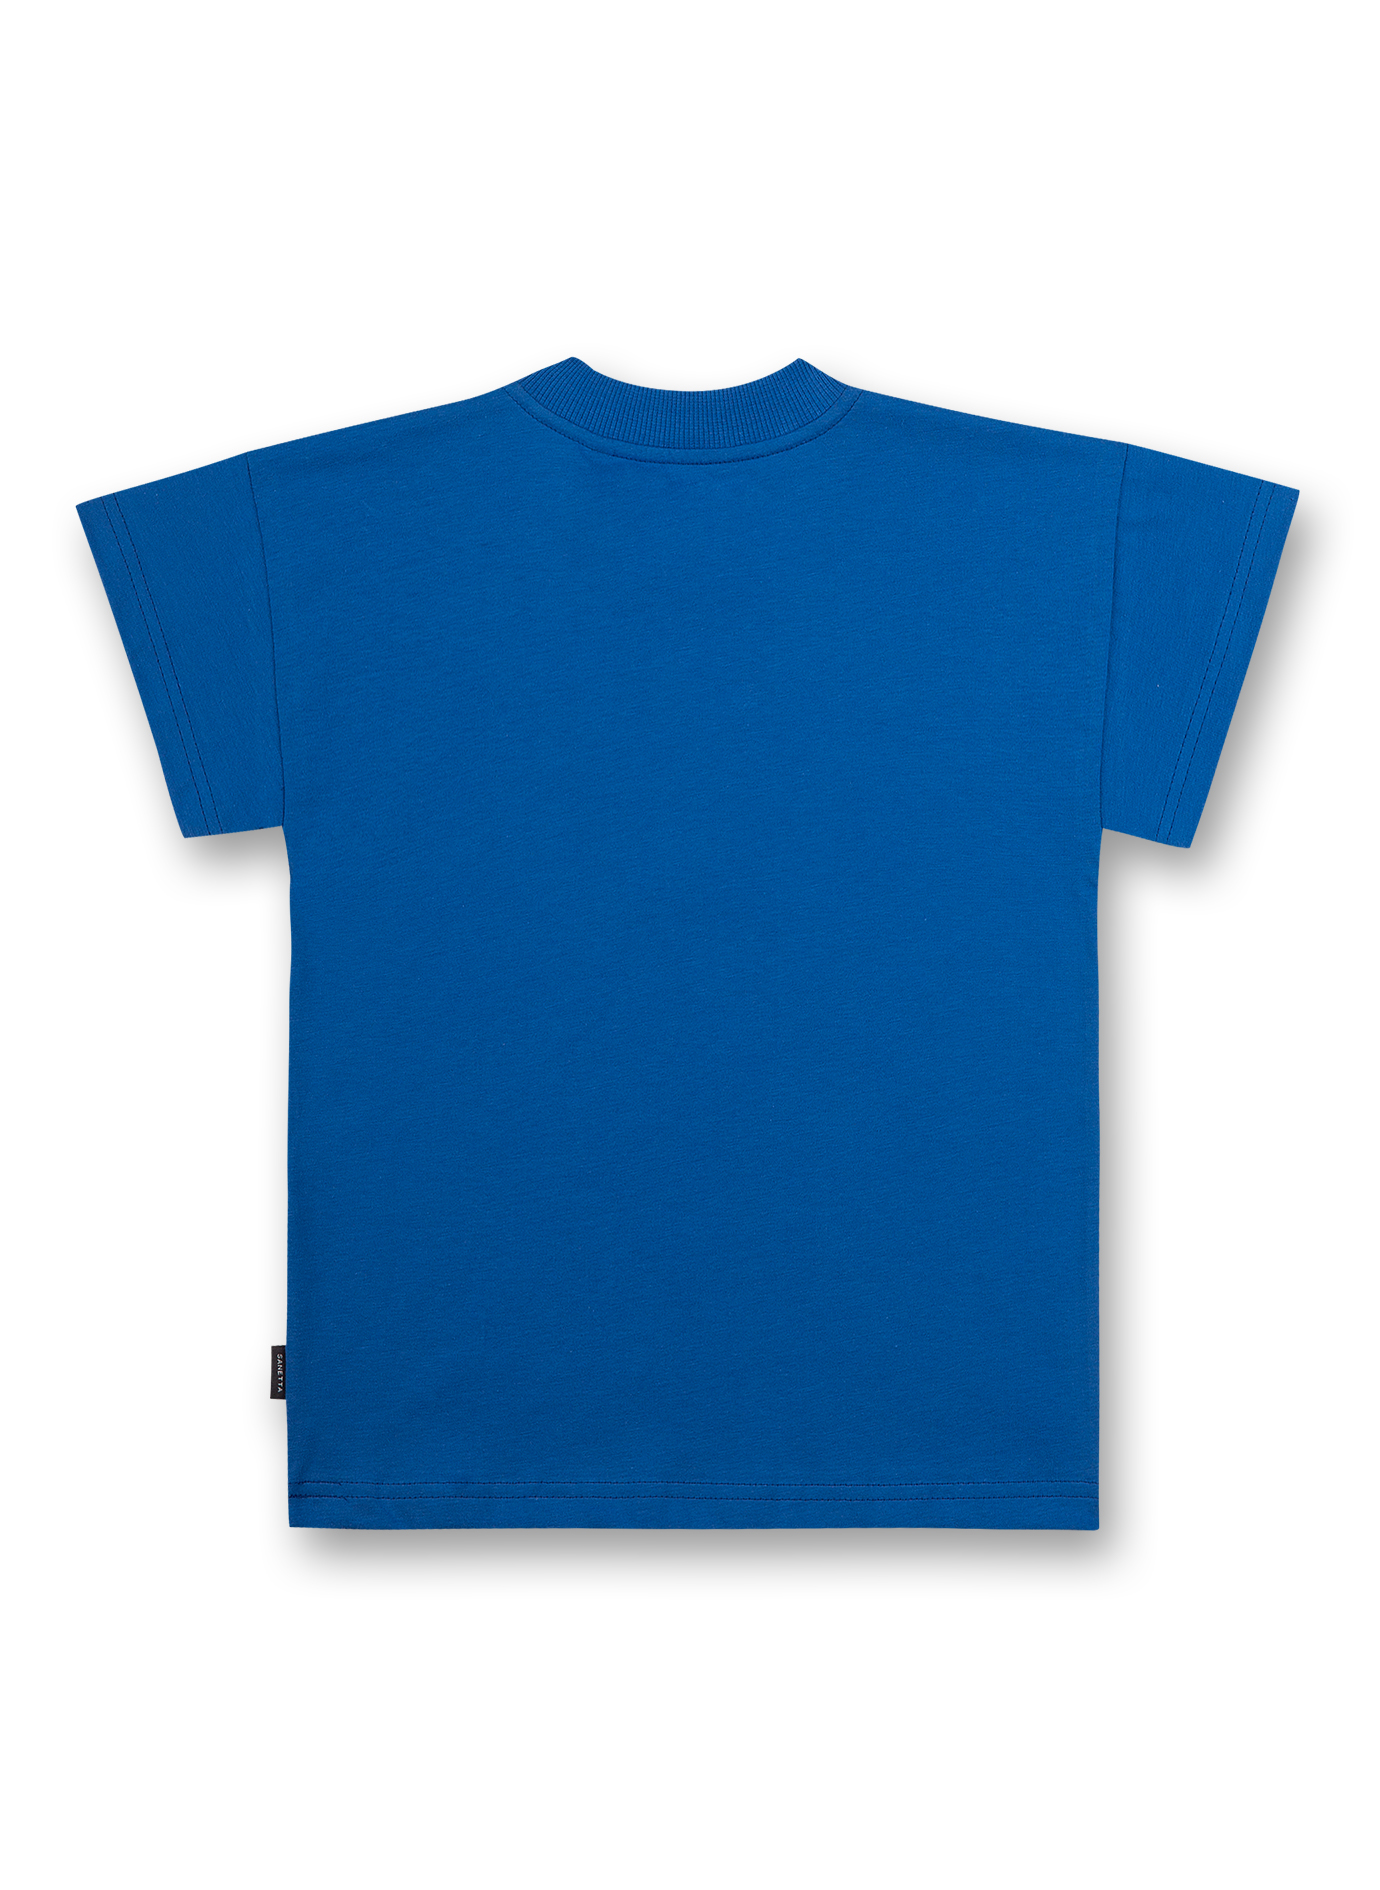 Jungen T-Shirt Blau Skate